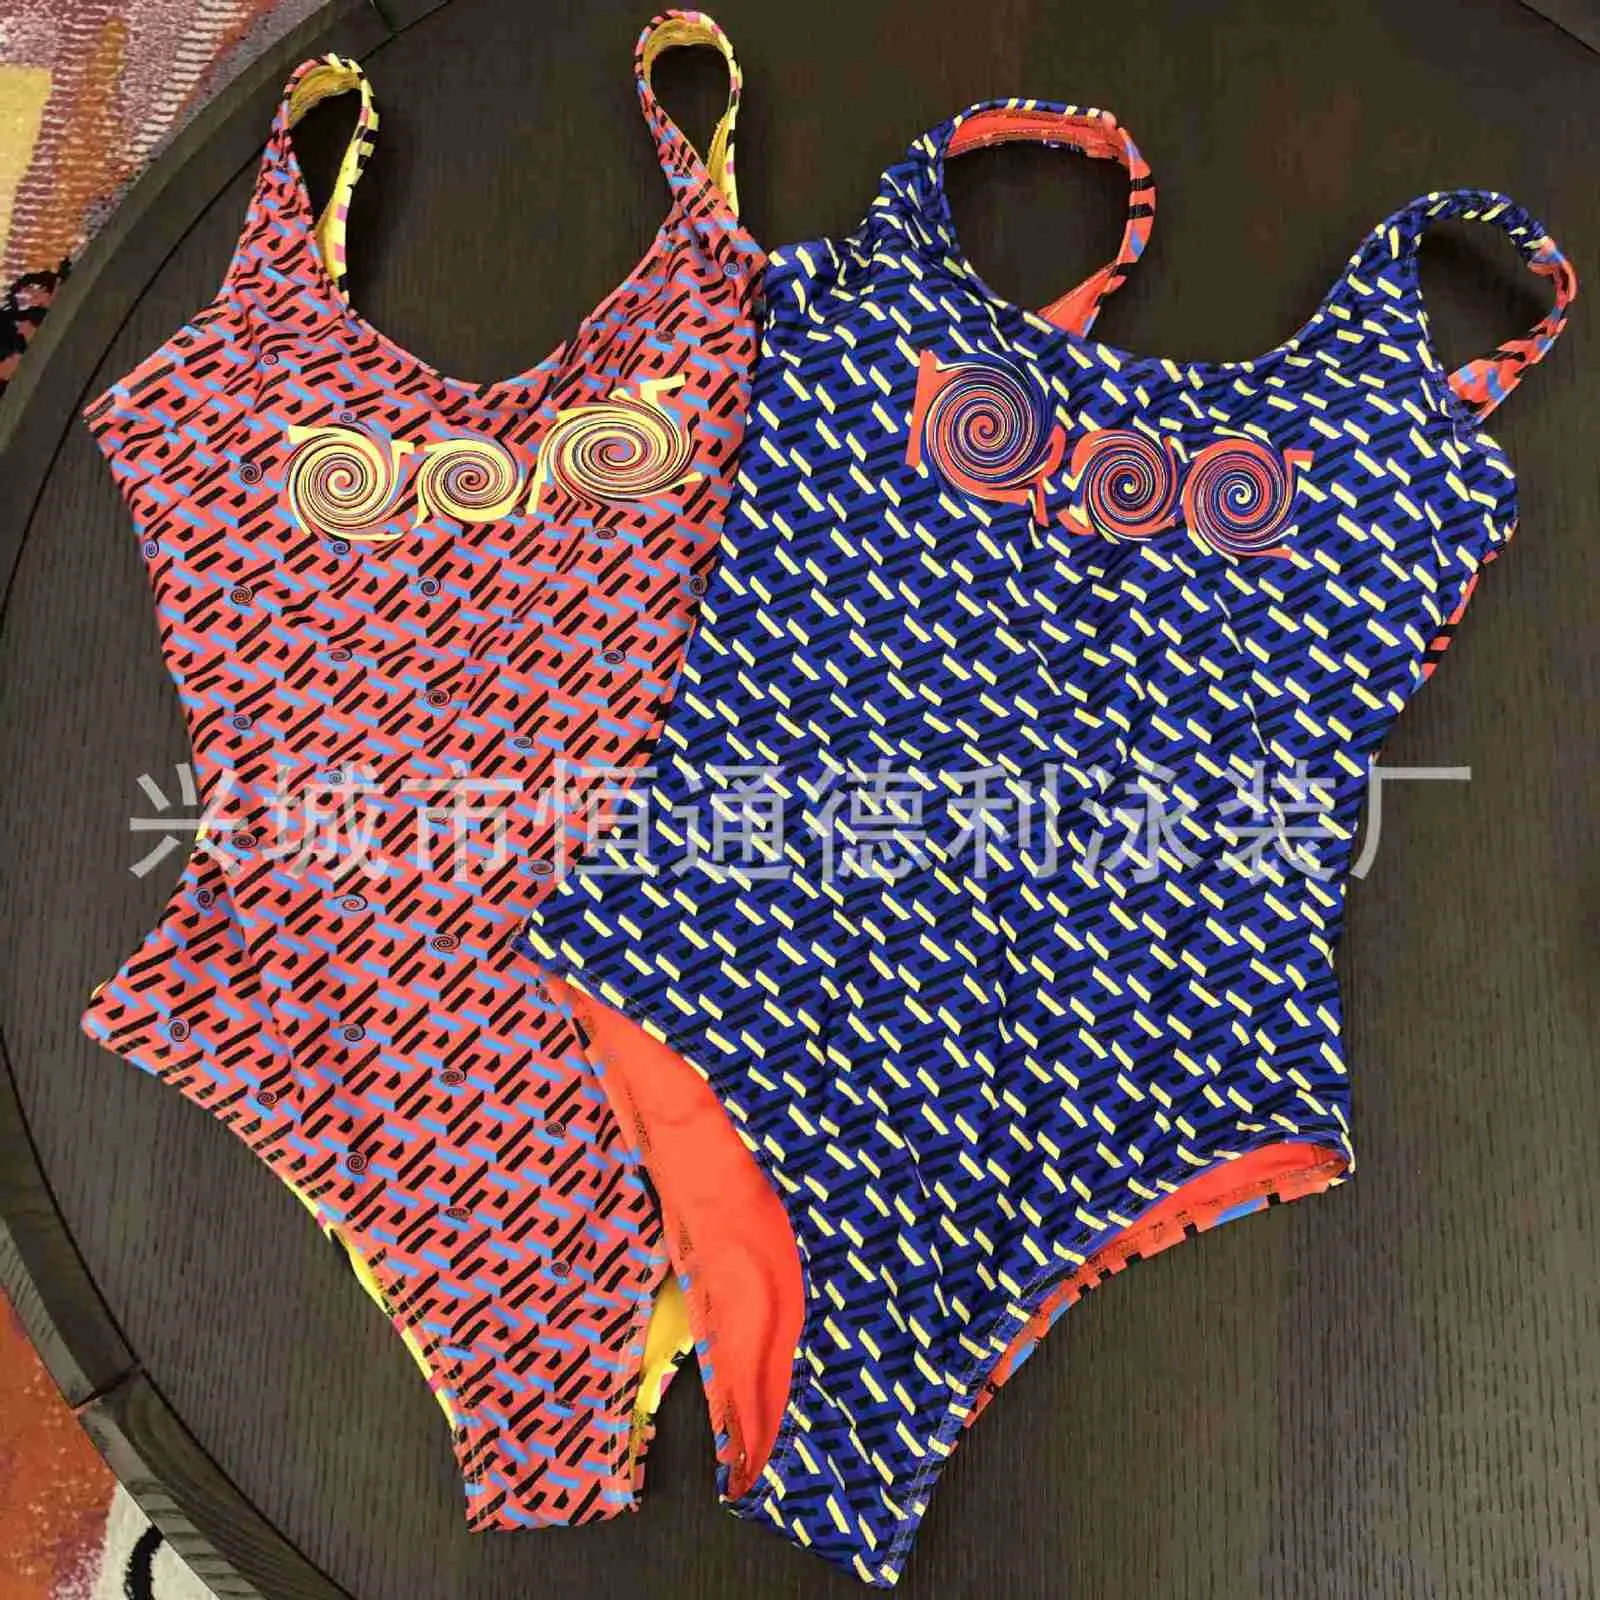 Badebekleidungsdesigner der Frauen neue Art und Weisemarke doppelte Farbe druckte einteiliges Badeanzugnetz des Dreiecks rote konservative Erholungsortfrauen der heißen Quelle CQL7